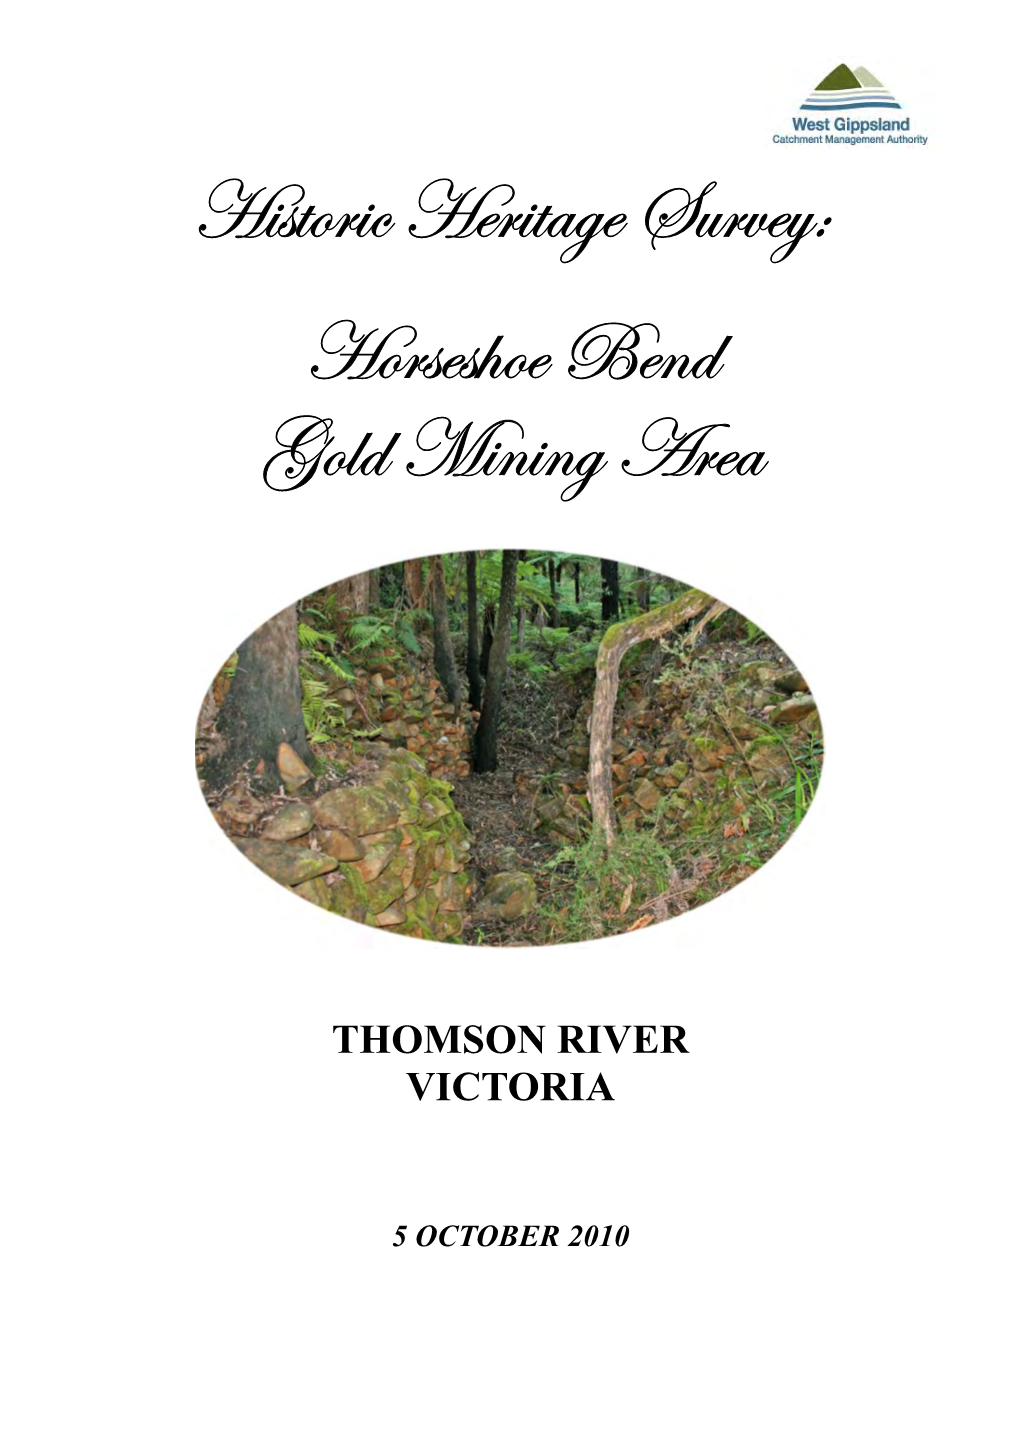 Historic Heritage Survey: Horseshoe Bend Gold Mining Area